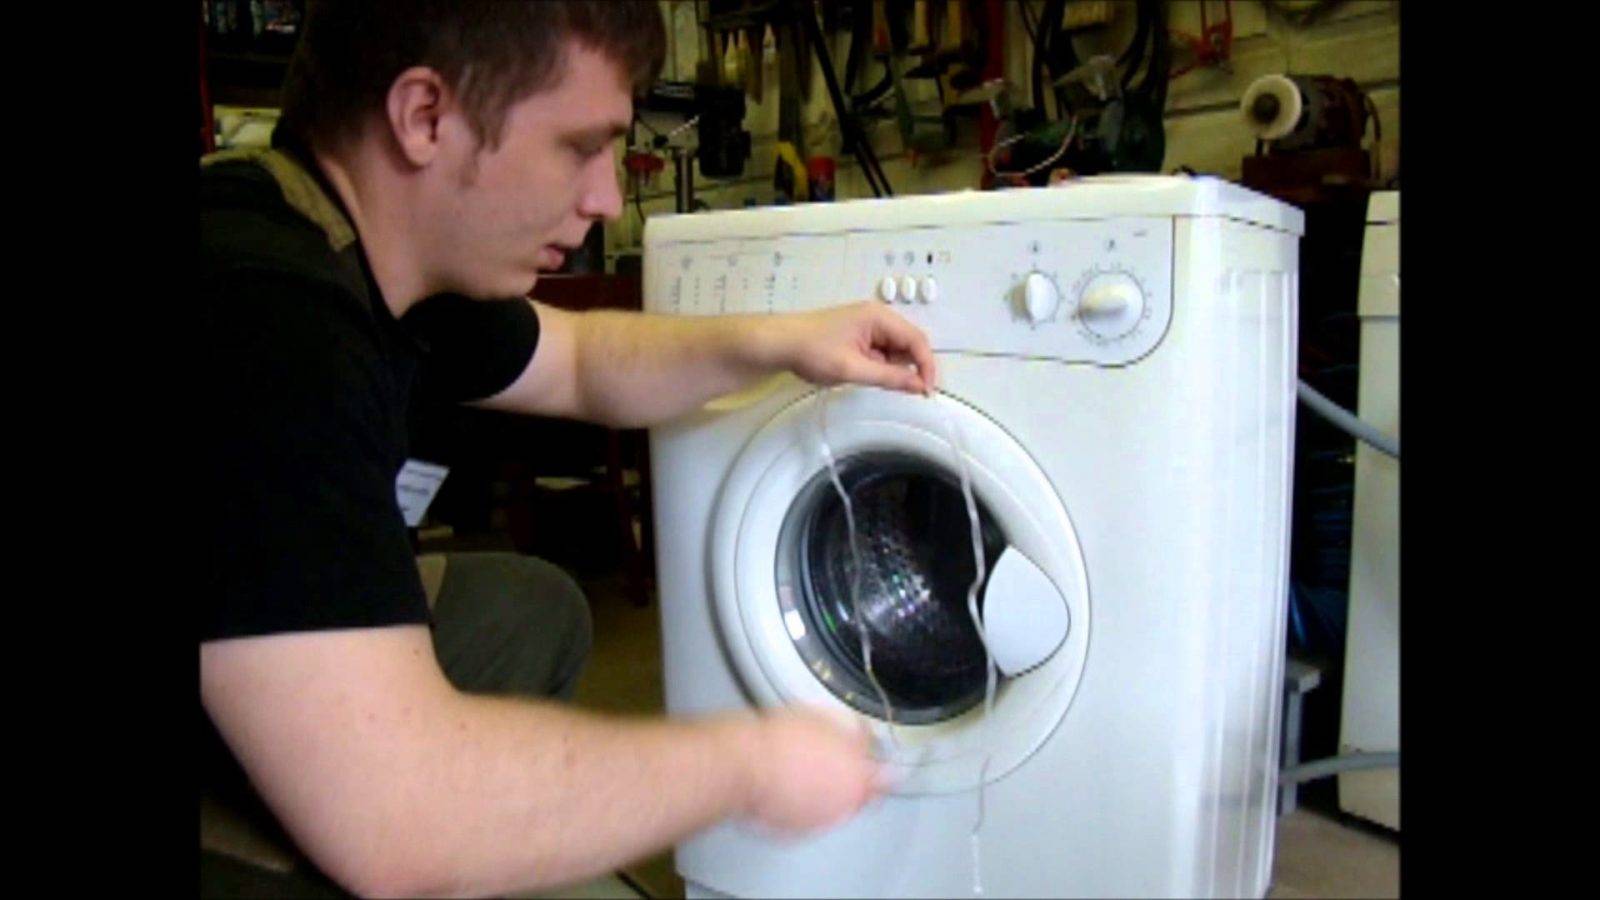 Как открыть стиральную машинку индезит, если она заблокирована